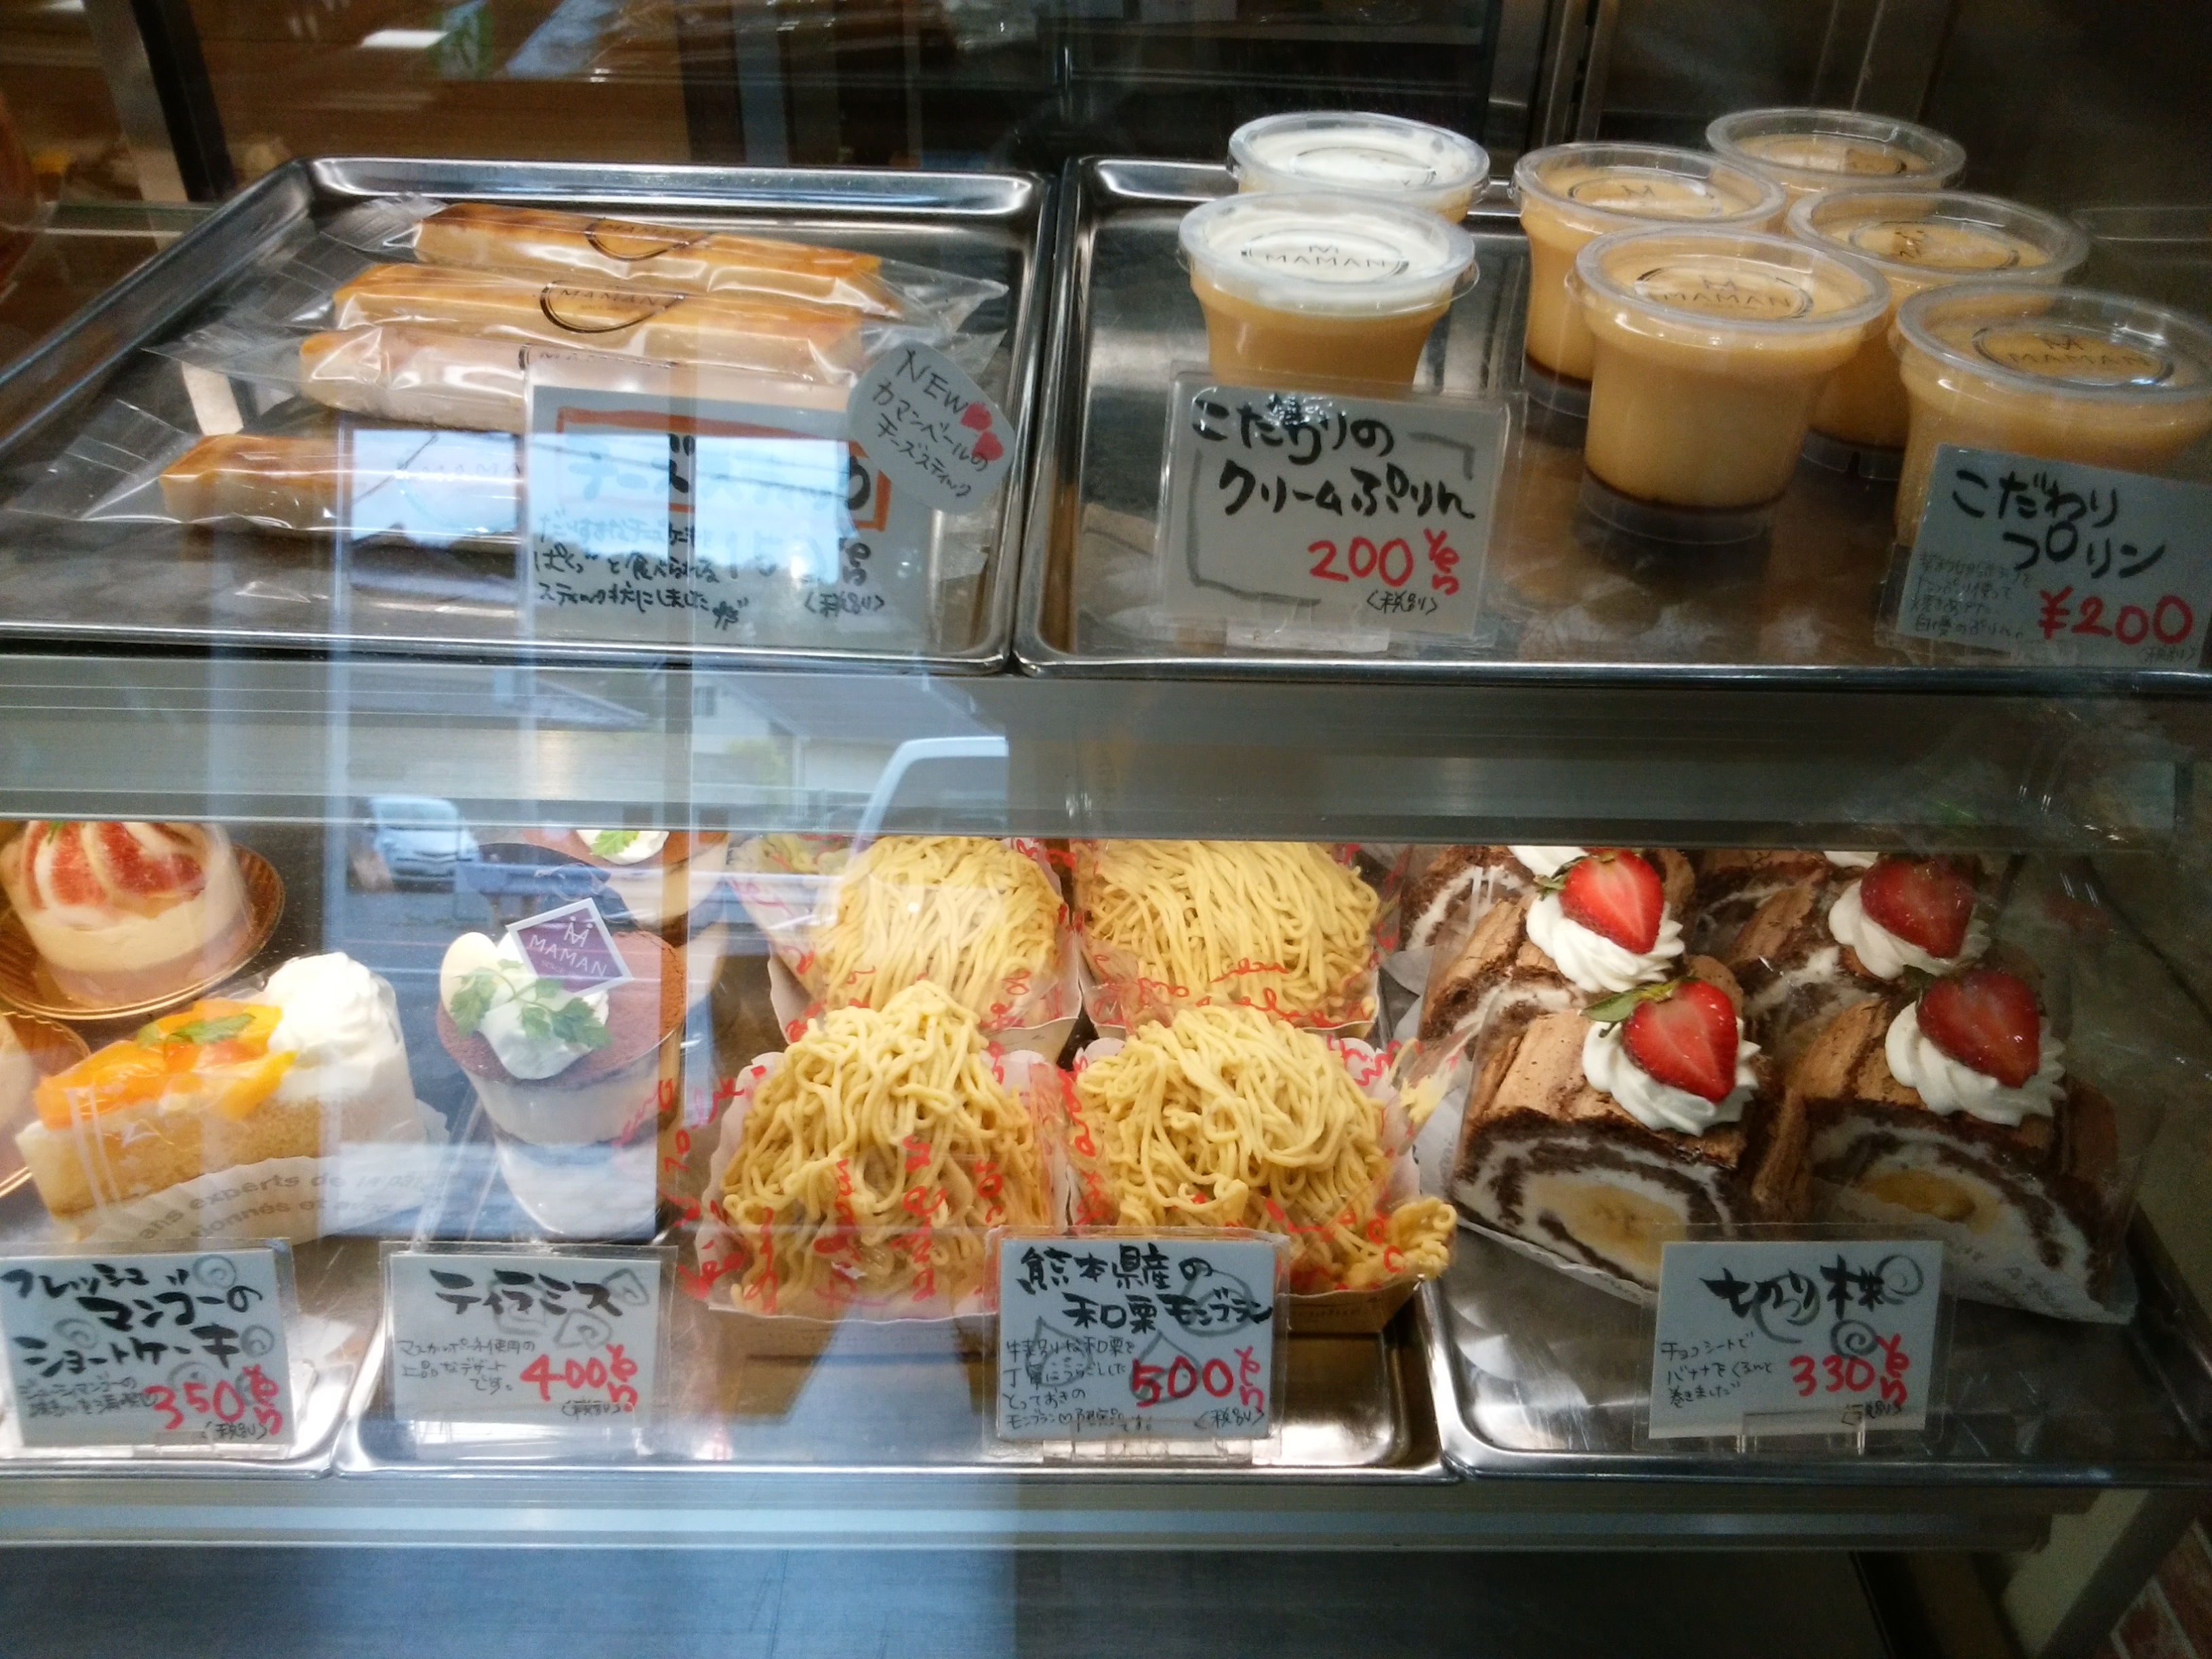 ママン洋菓子店 桜井市 三度の飯よりケーキ好き 三重県にもっとケーキバイキングを